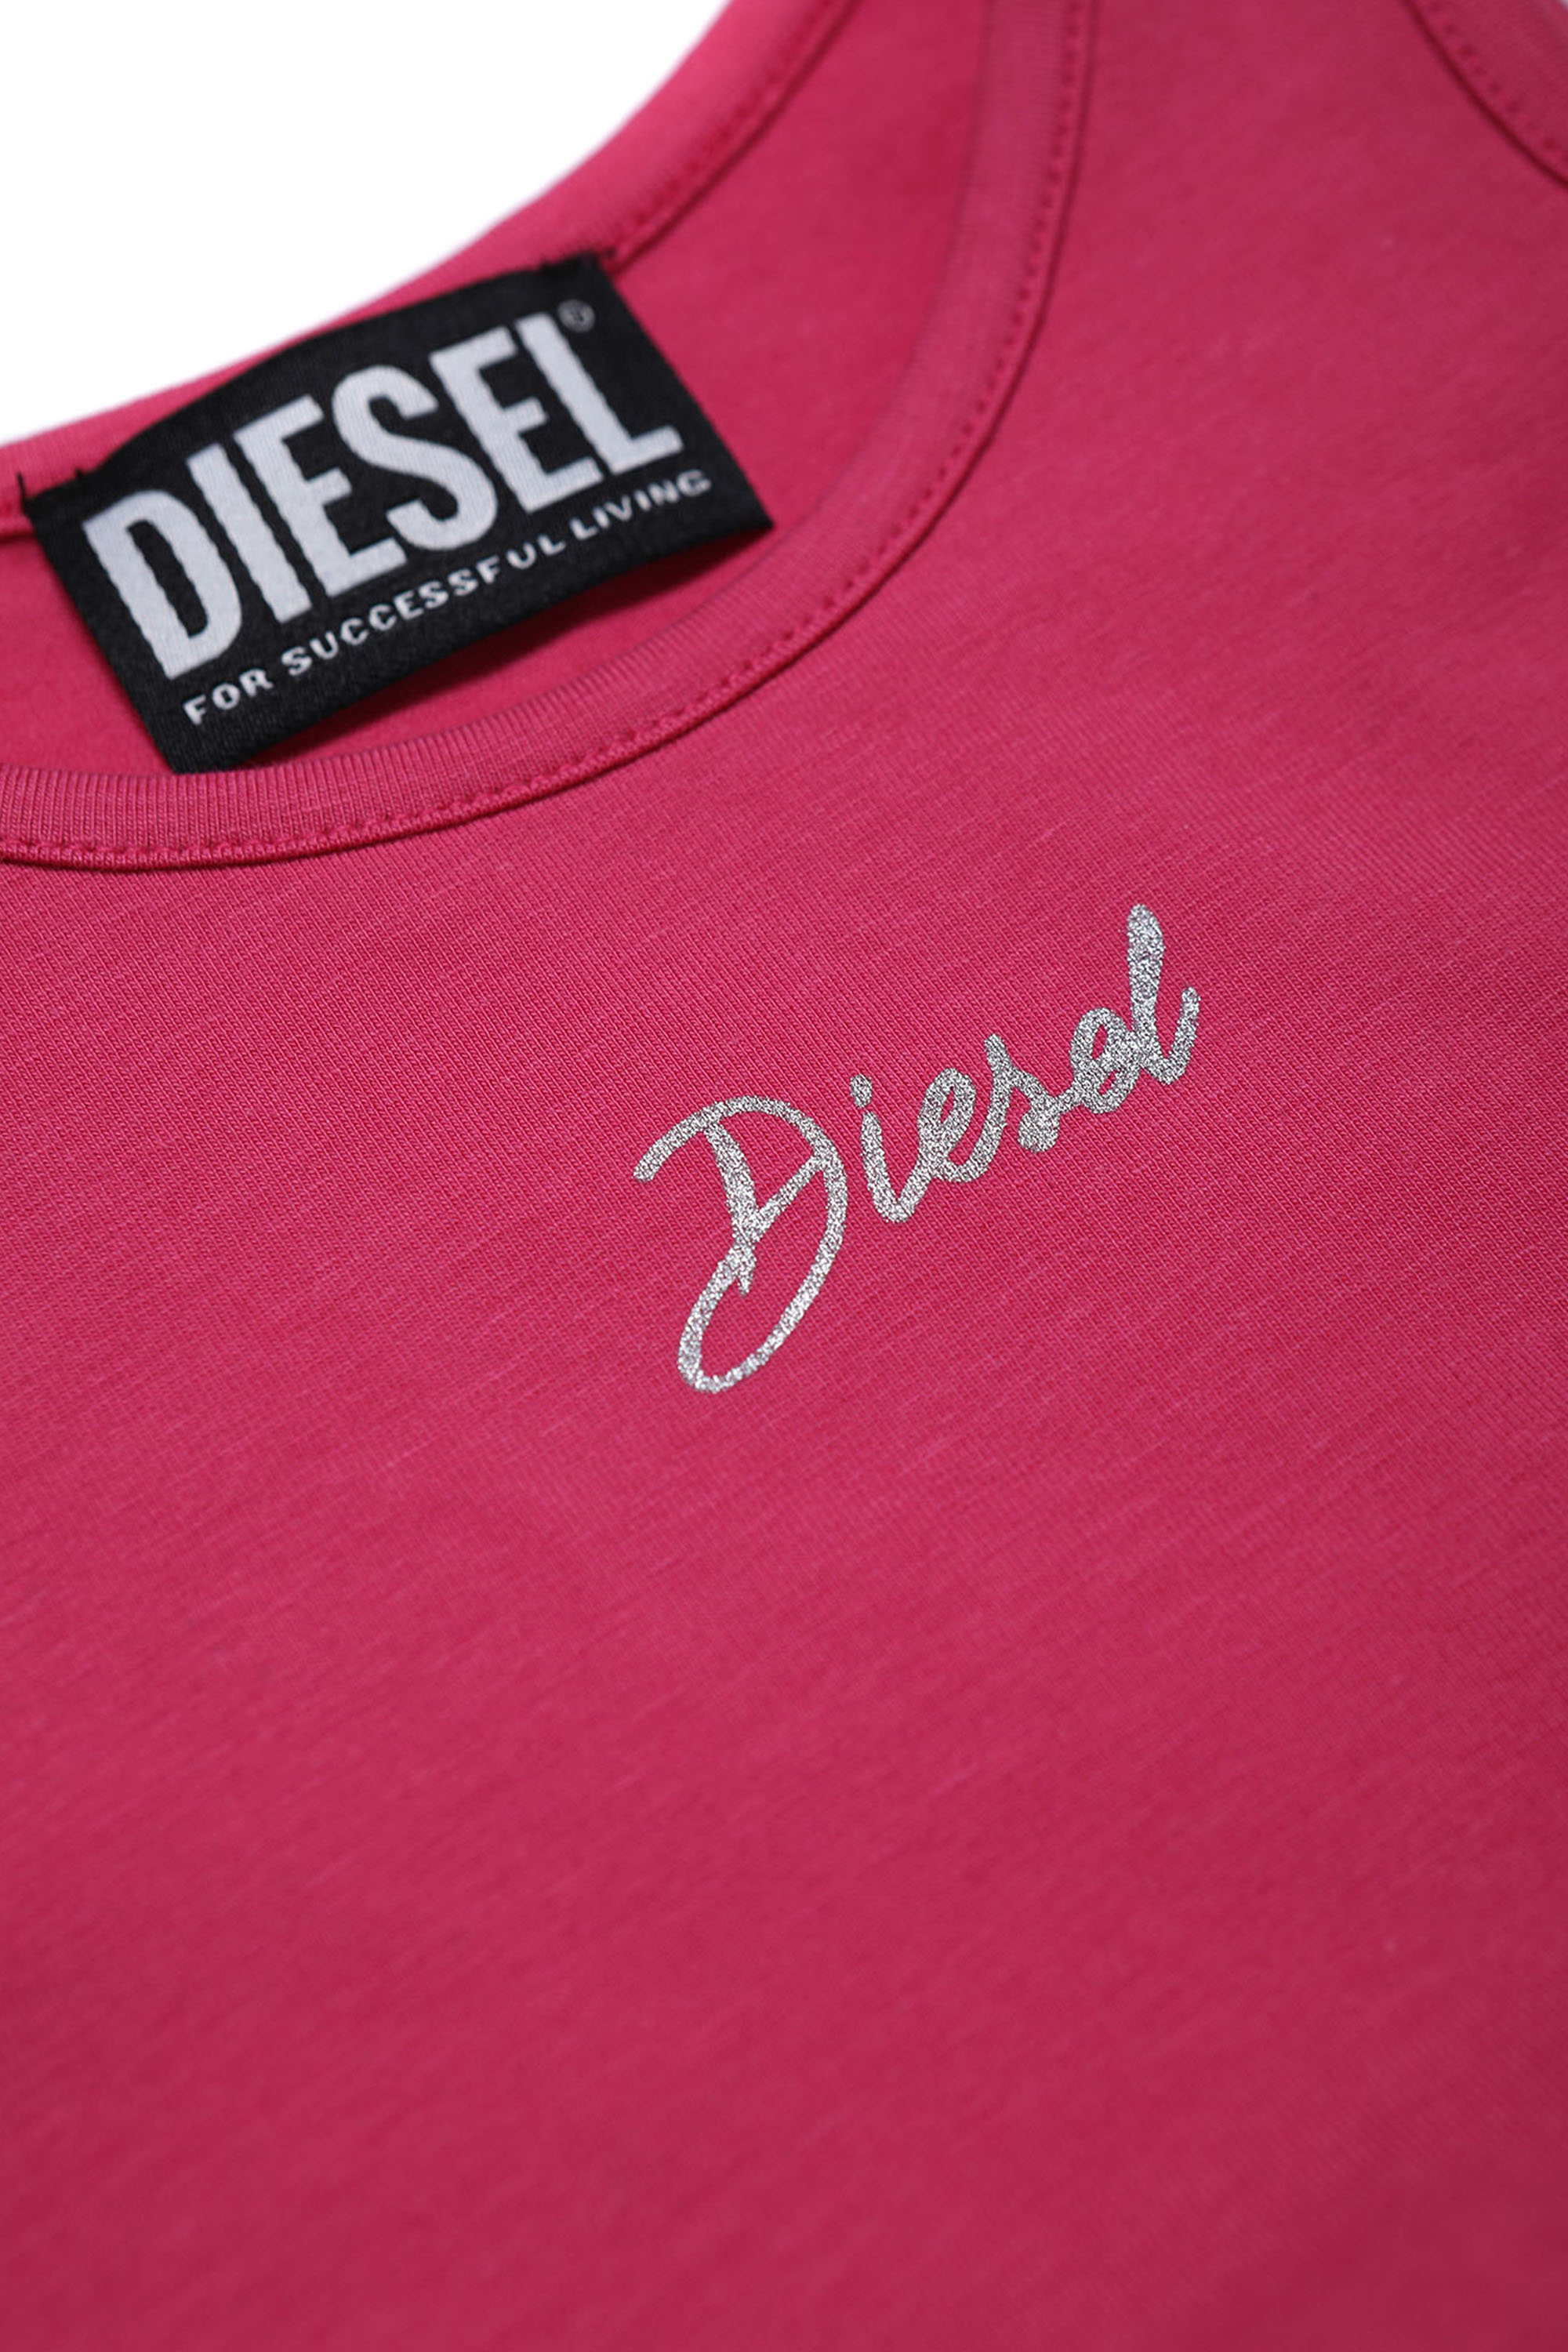 Diesel - TRISAB, Pink - Image 3